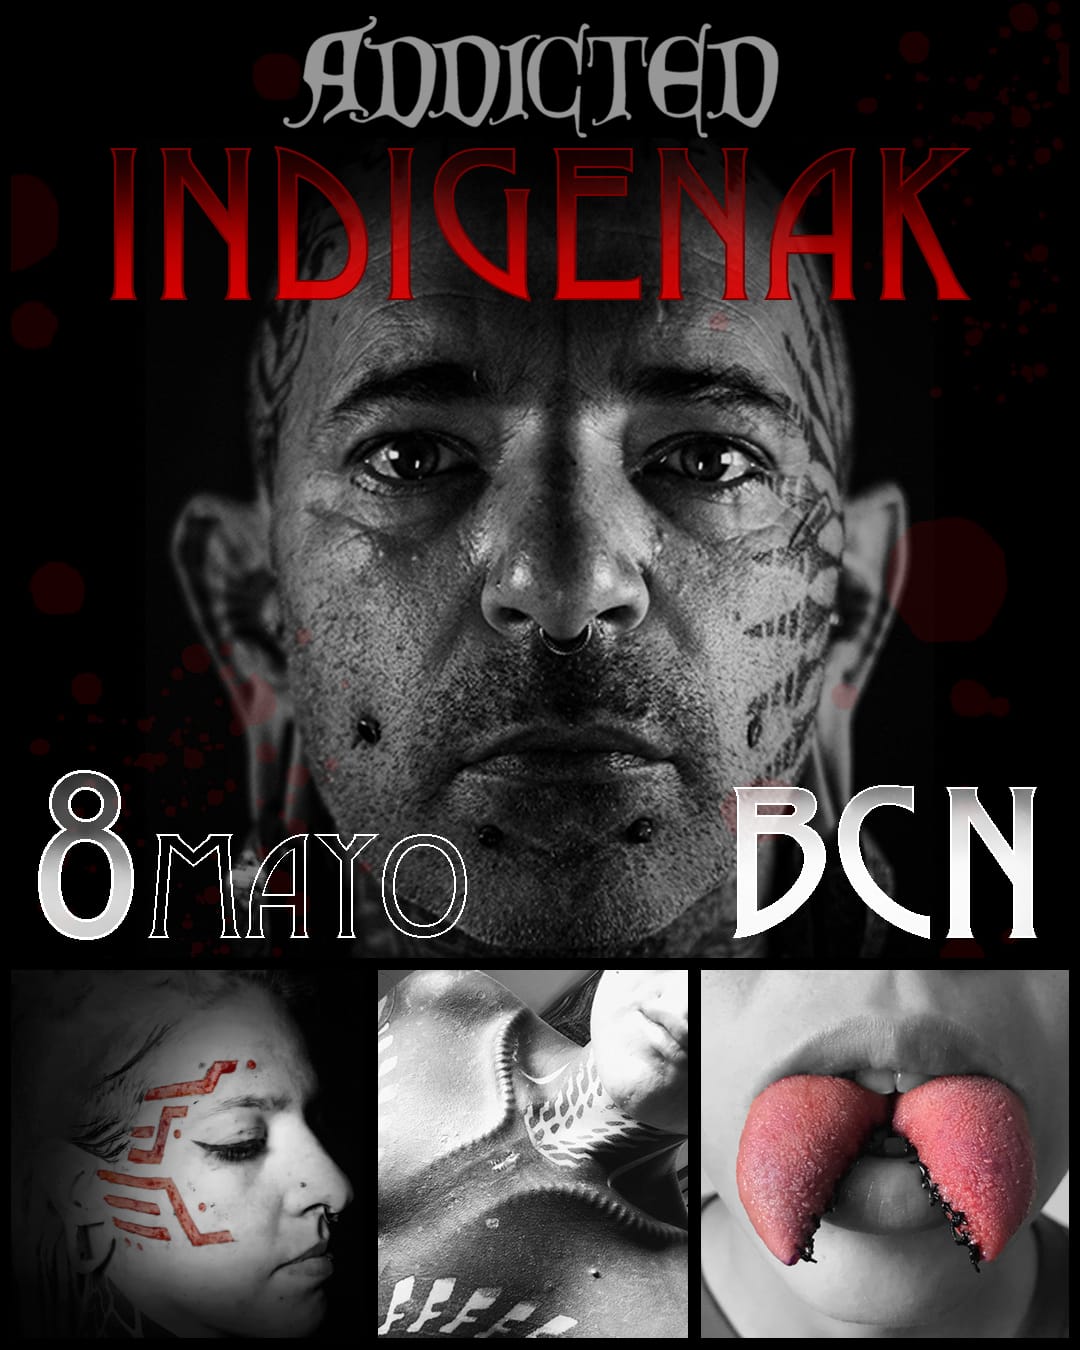 @indigenak estará con nosotros en Addicted el 8 de mayo!